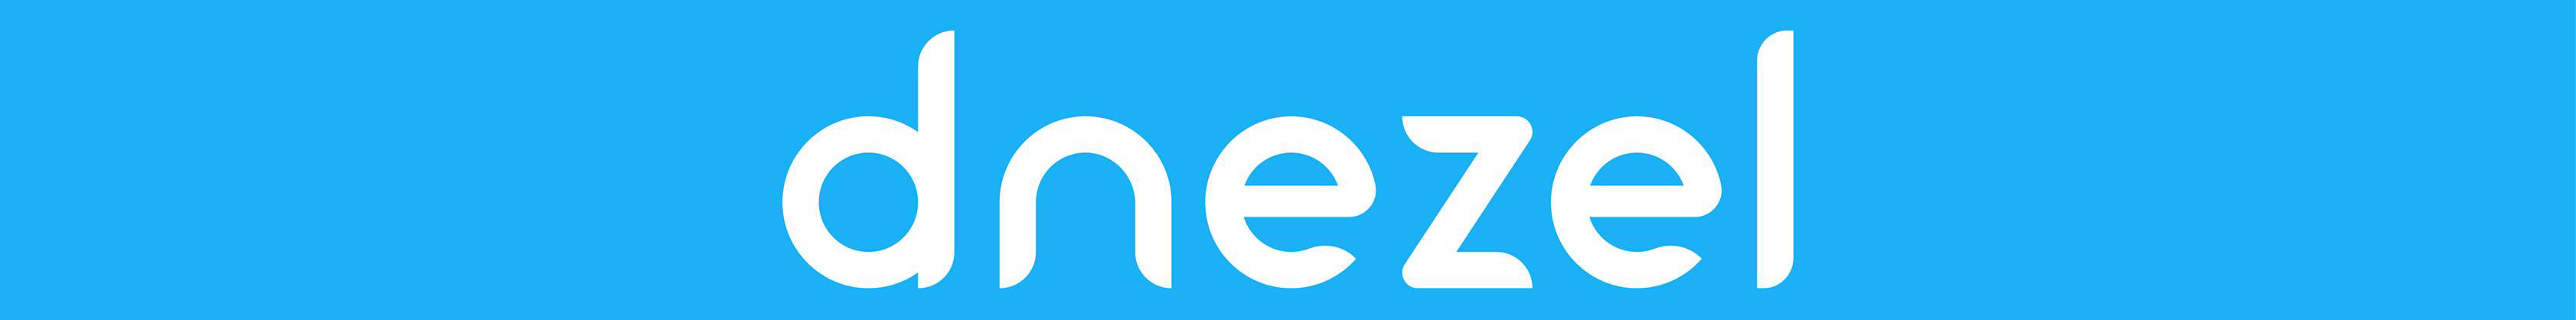 Баннер профиля Team Dnezel